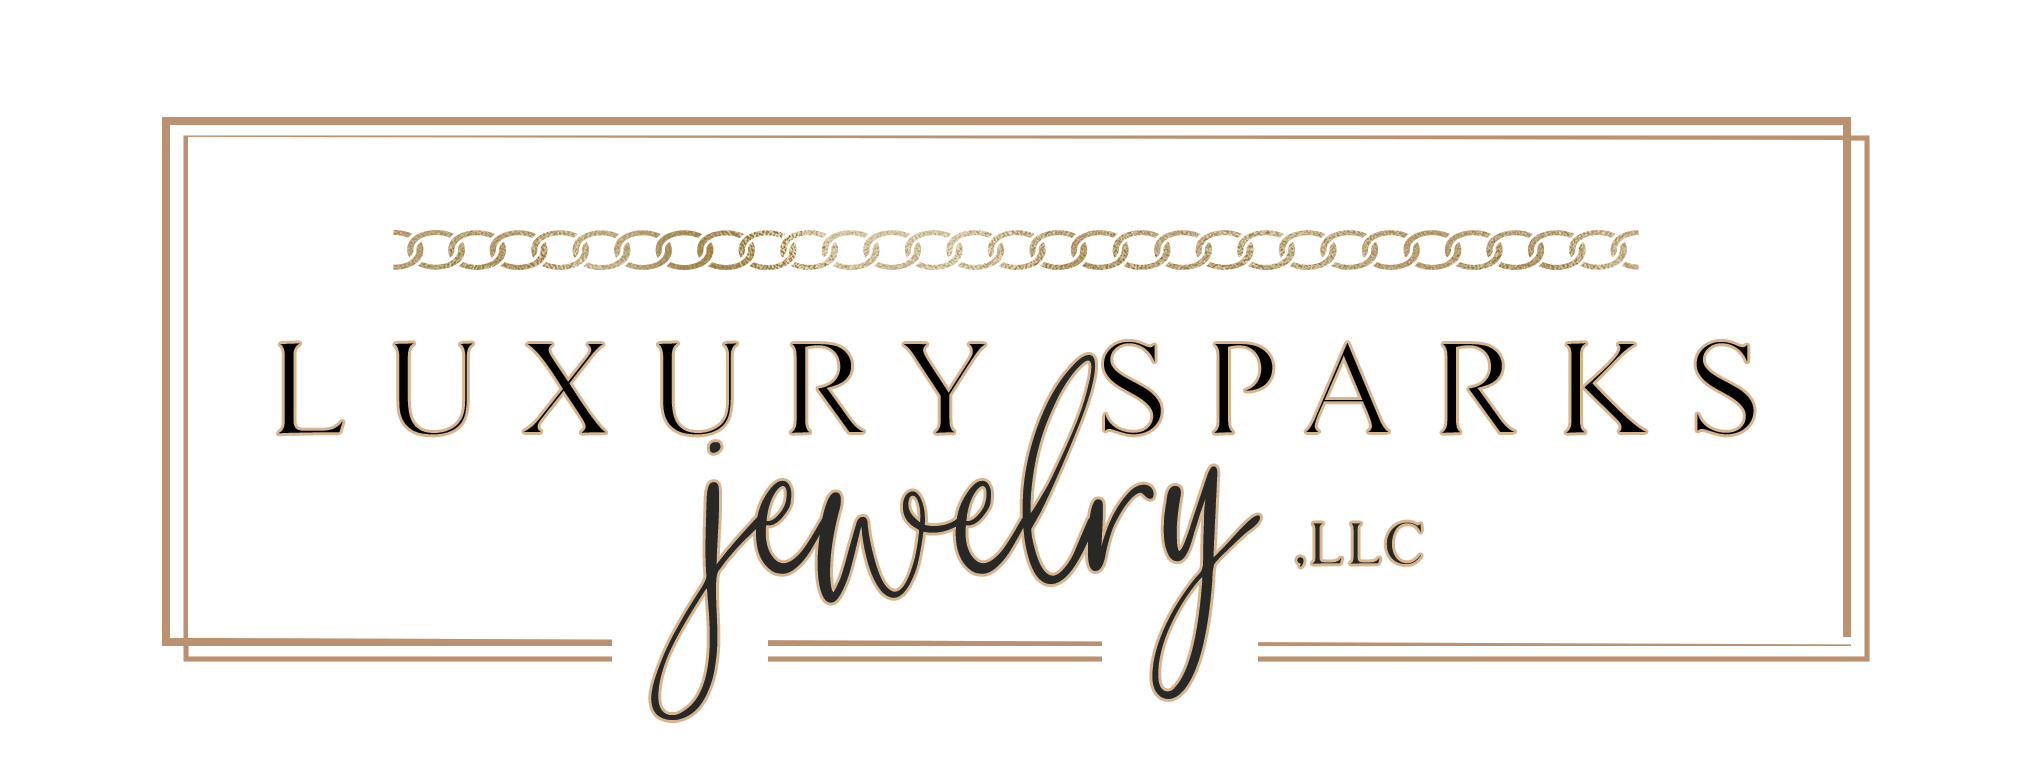 Luxury Sparks Jewelry